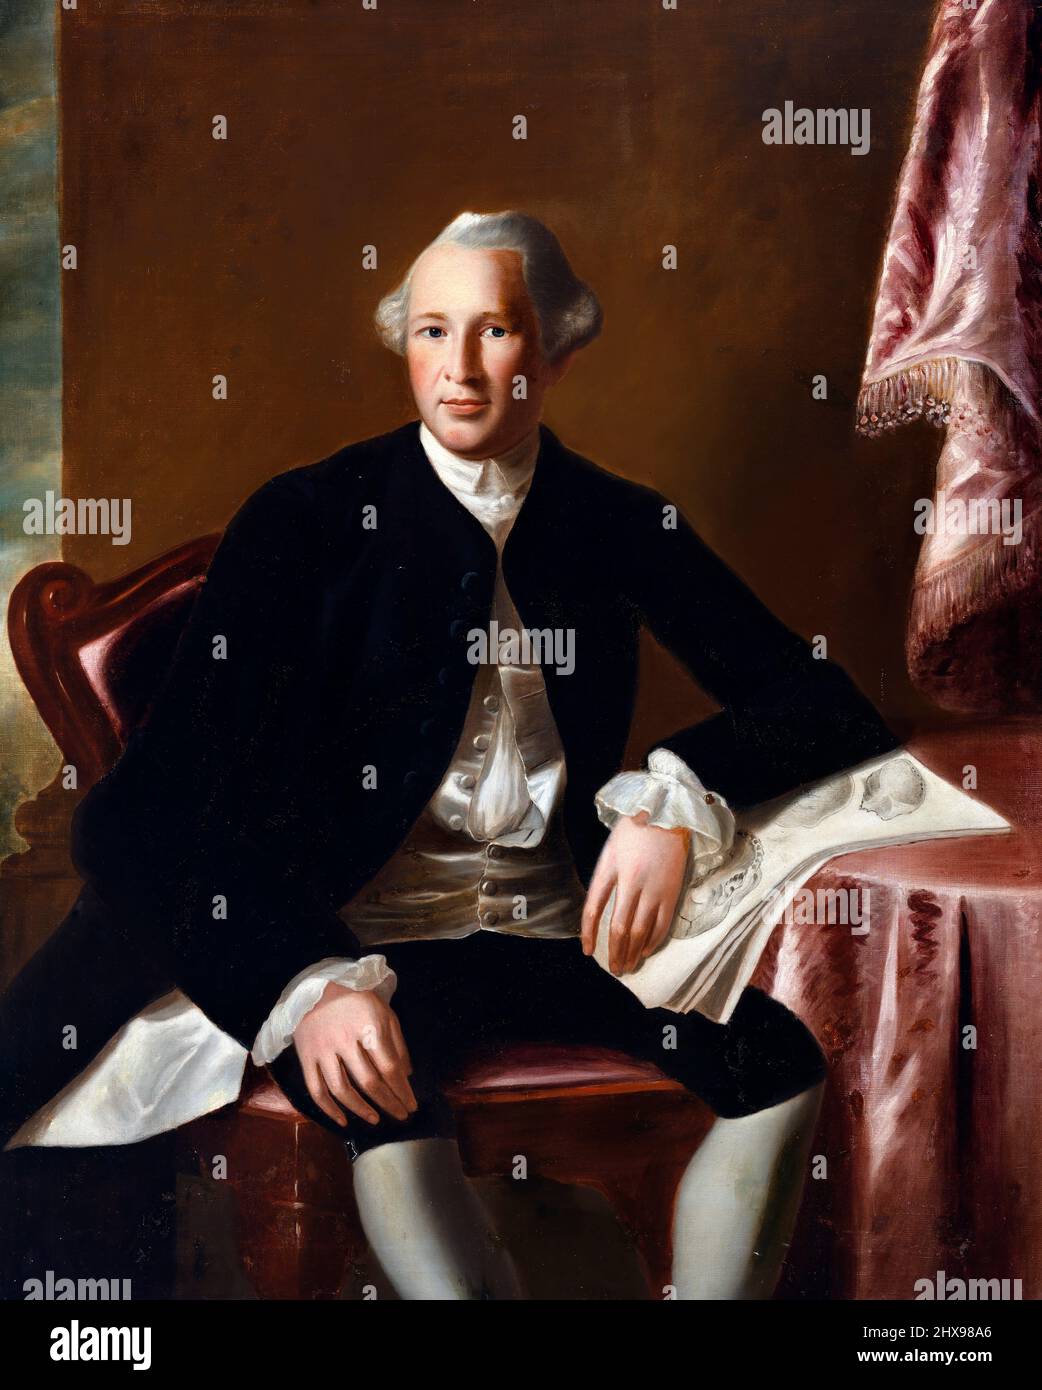 Ritratto del medico e del generale americano di guerra rivoluzionaria, Joseph Warren (1741-1775), copia dopo John Singleton Copley, olio su tela Foto Stock